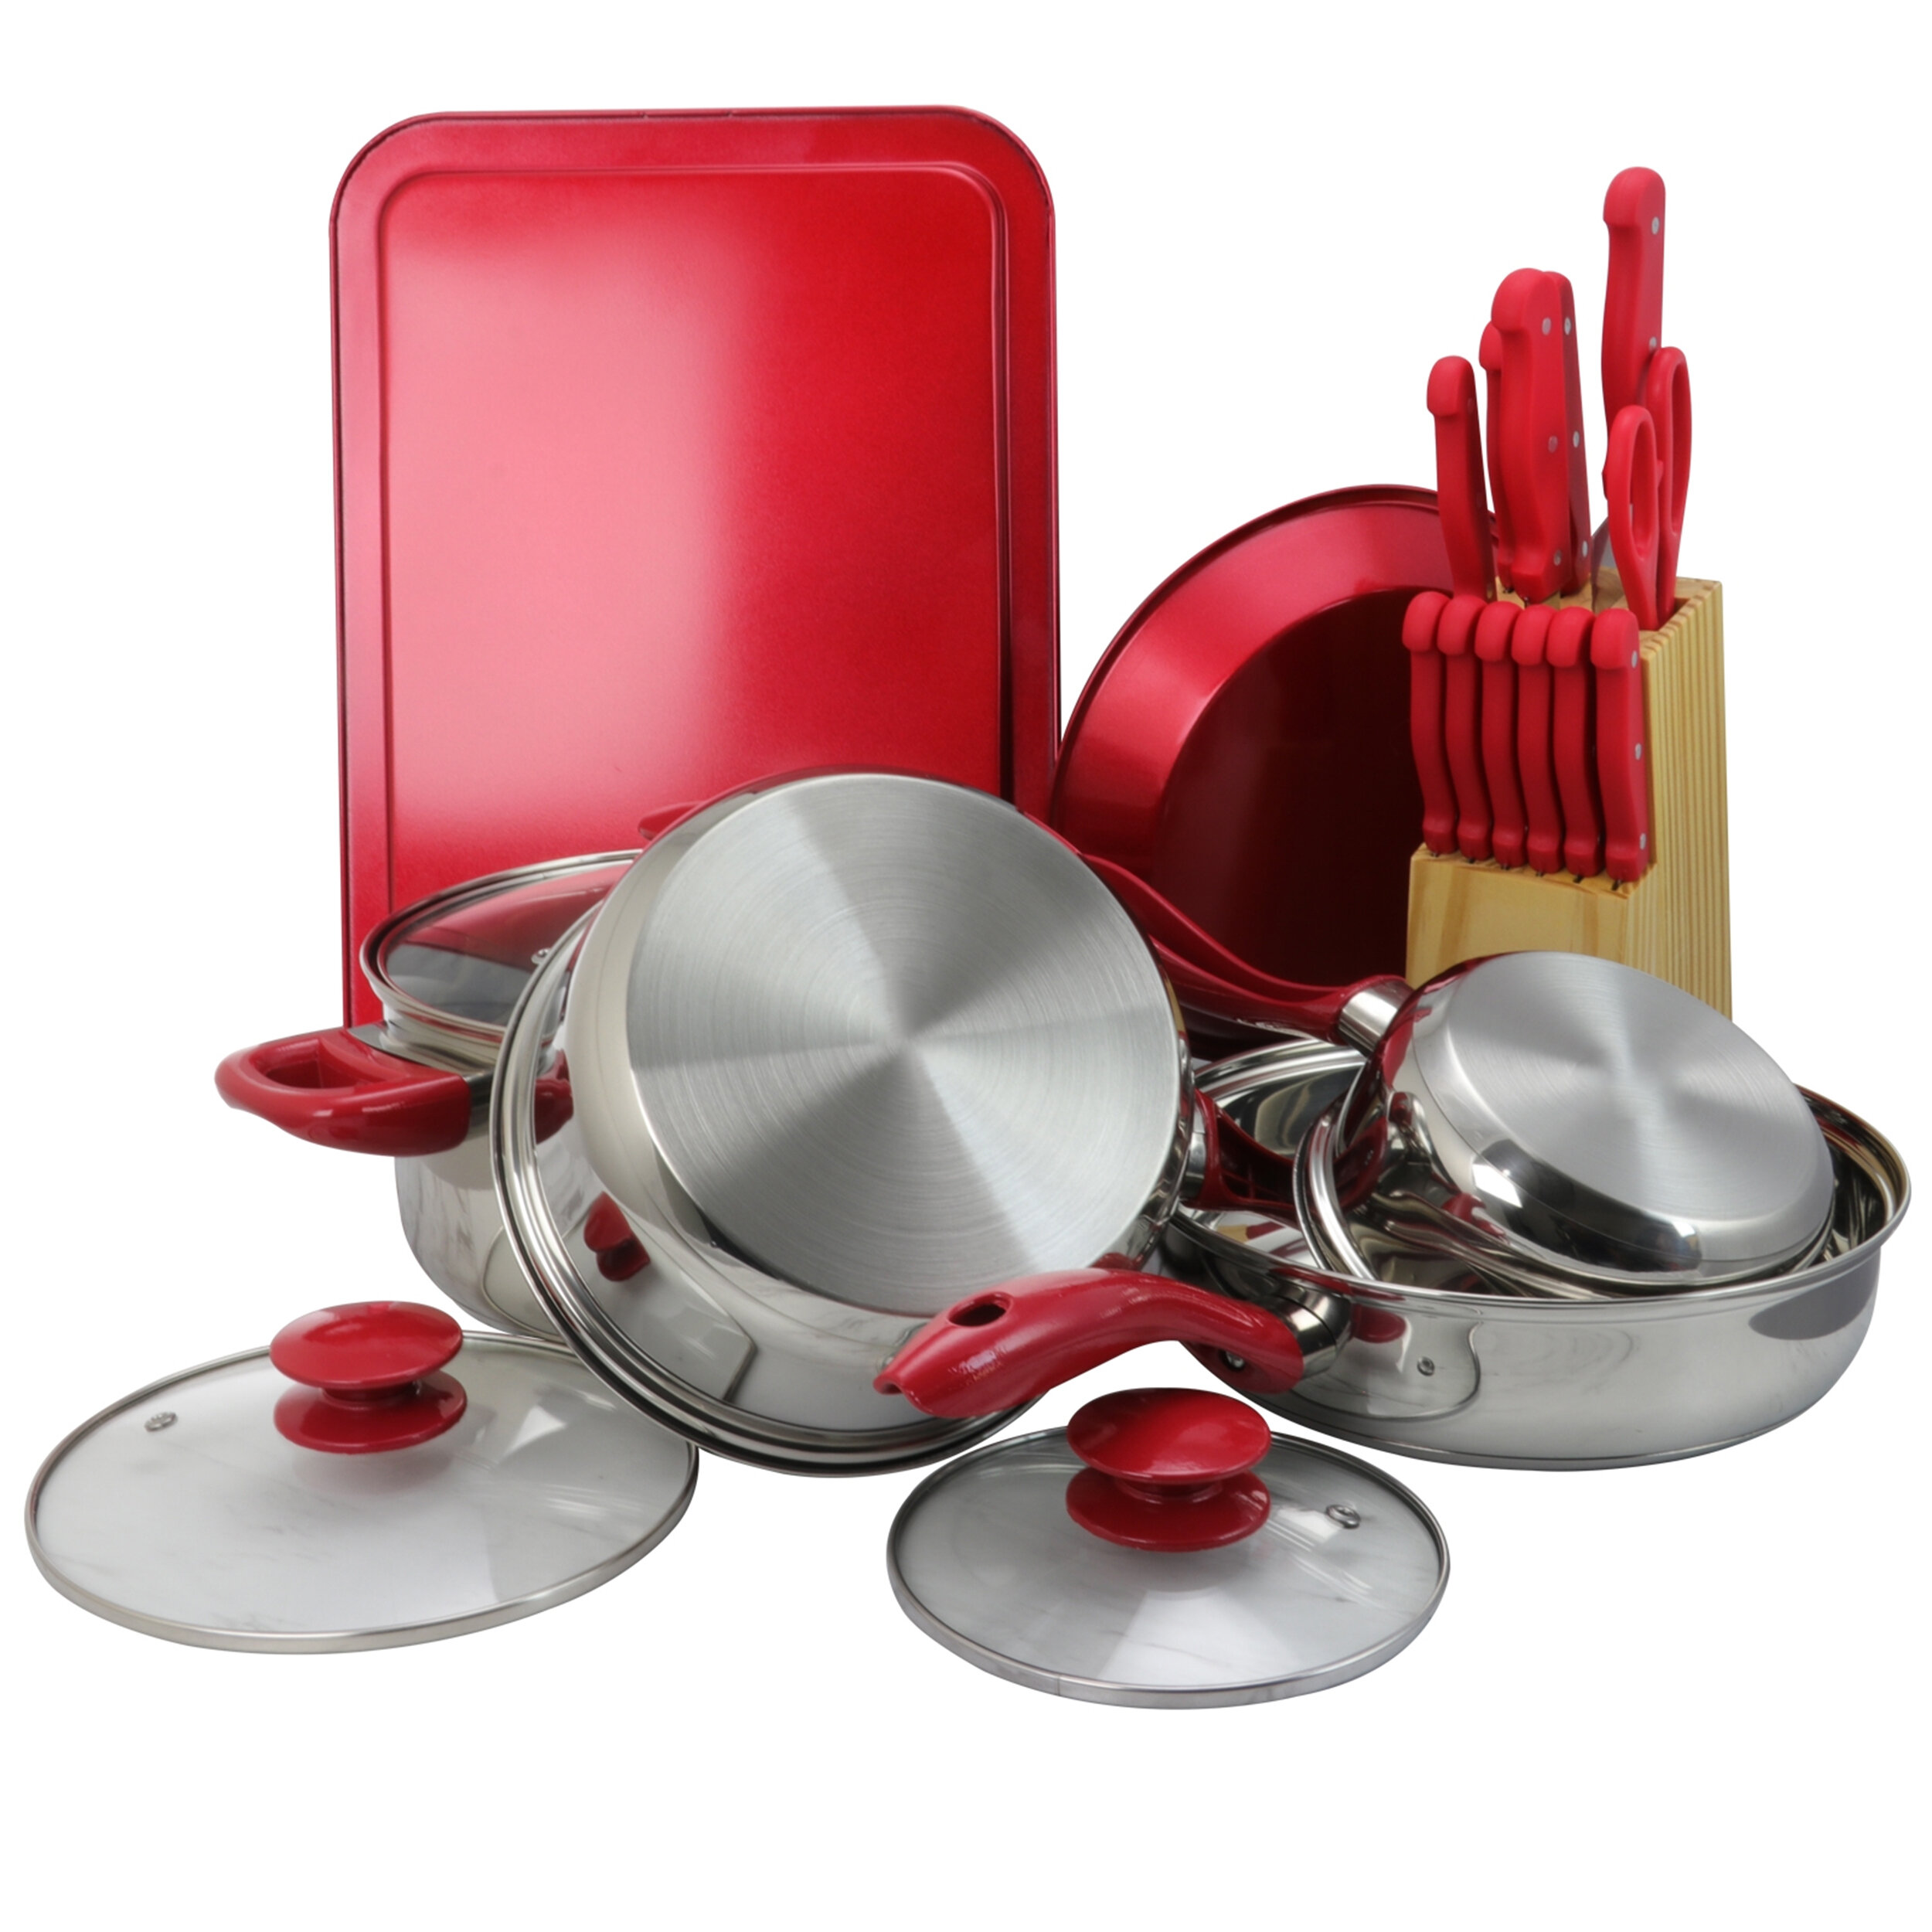 https://assets.wfcdn.com/im/53123278/compr-r85/1923/192361552/22-piece-non-stick-stainless-steel-1810-cookware-set.jpg